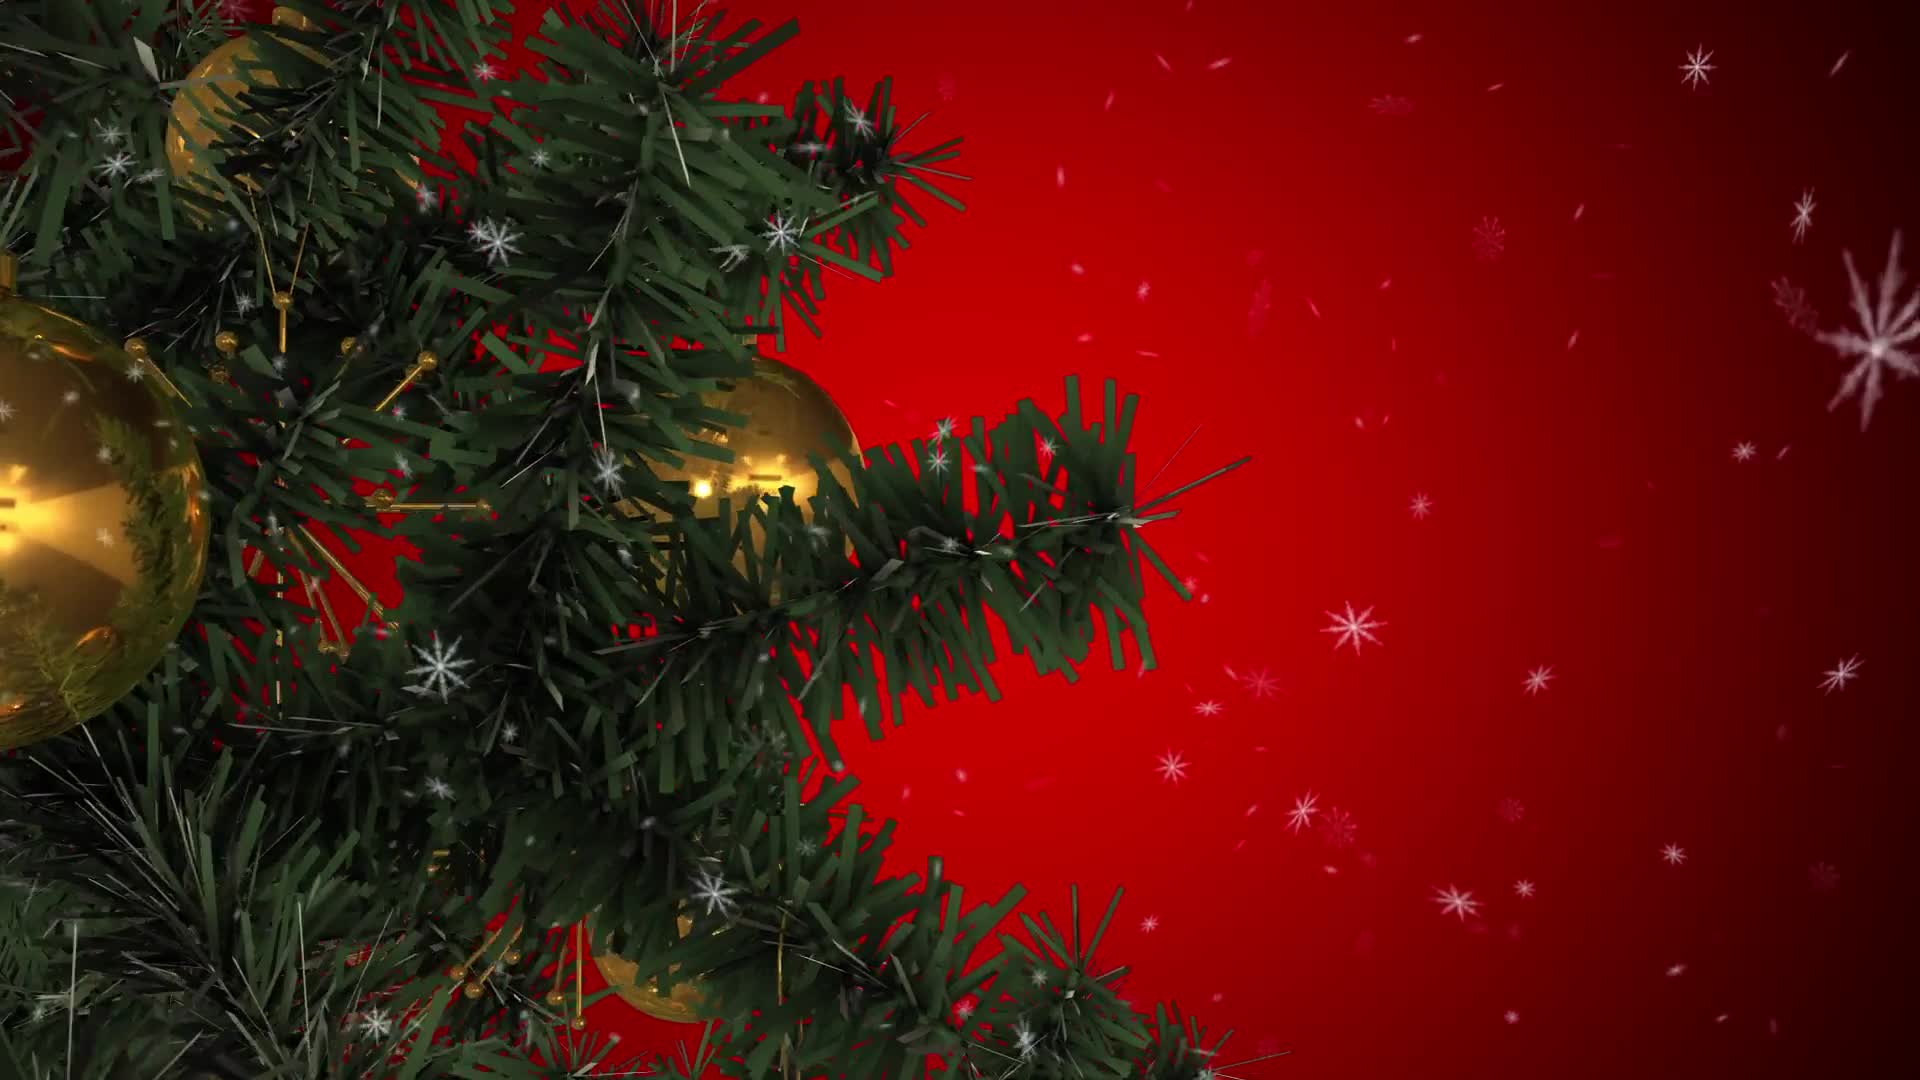 Rotating Christmas Tree Videohive 22935986 Motion Graphics Image 1